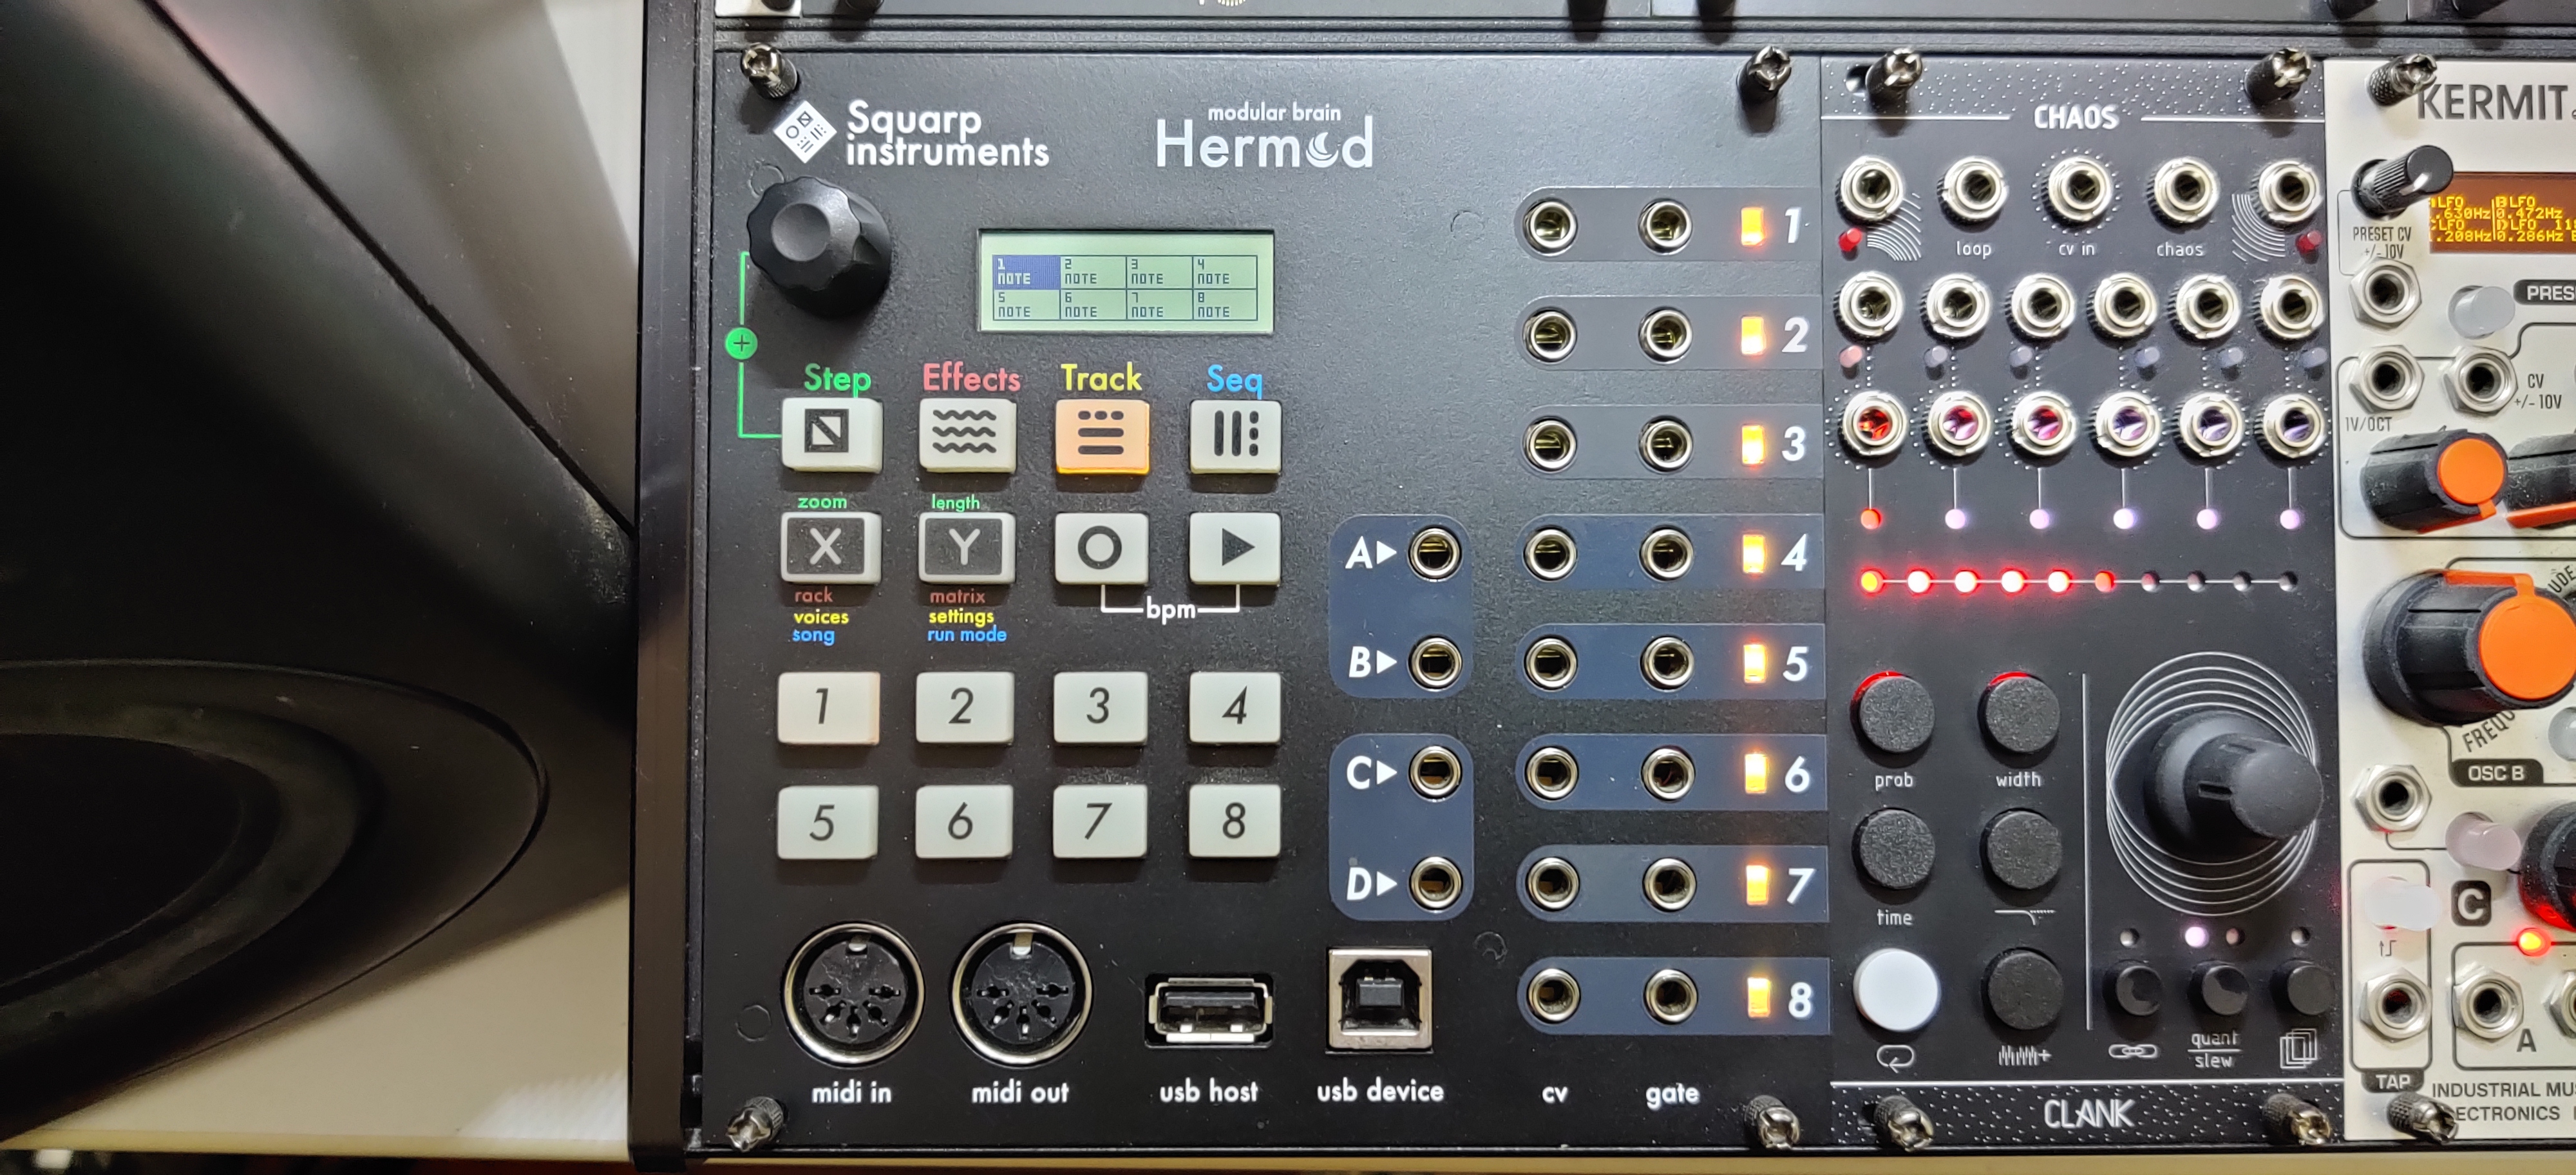 爆買い国産Squarp instruments Hermod (ユーロラック) 音源モジュール